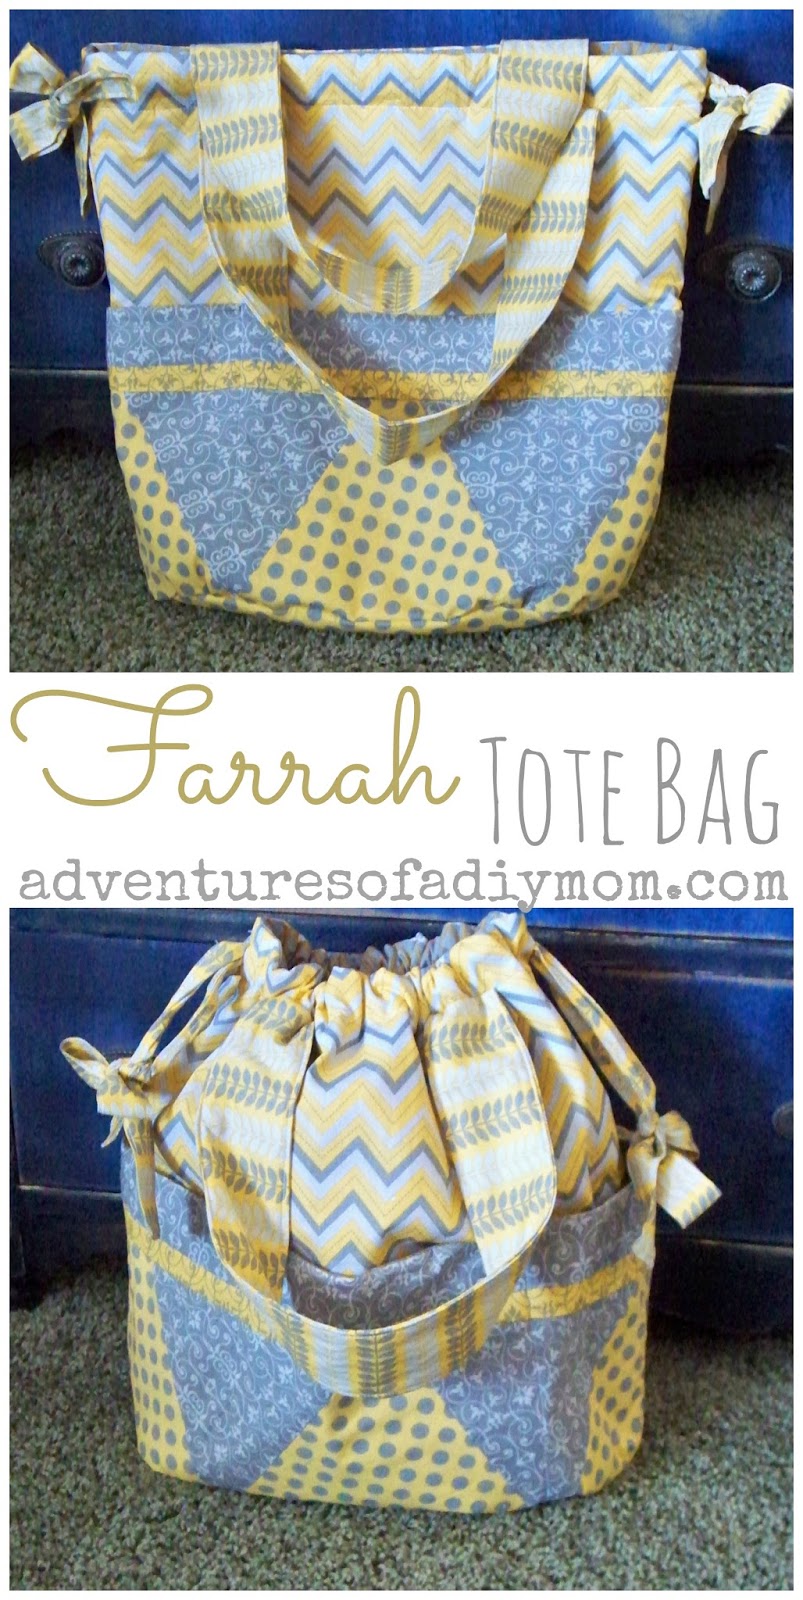 The Farrah Tote Bag